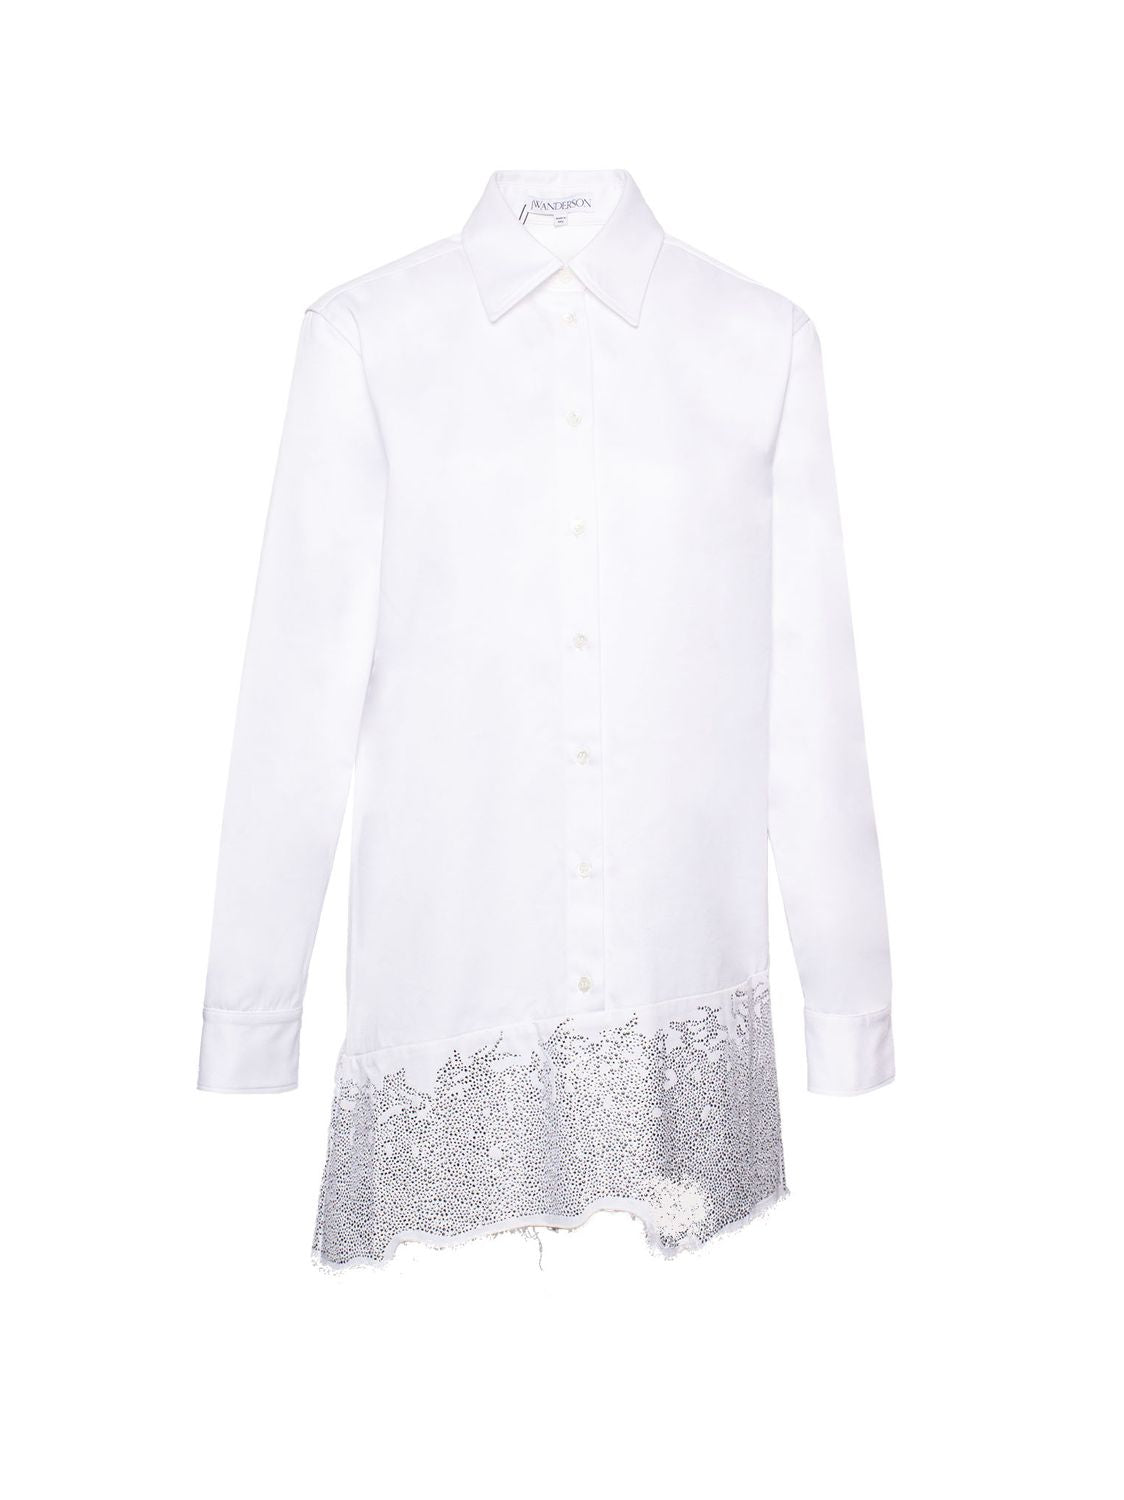 クリスタル装飾の入ったコットンシャツドレス ホワイト